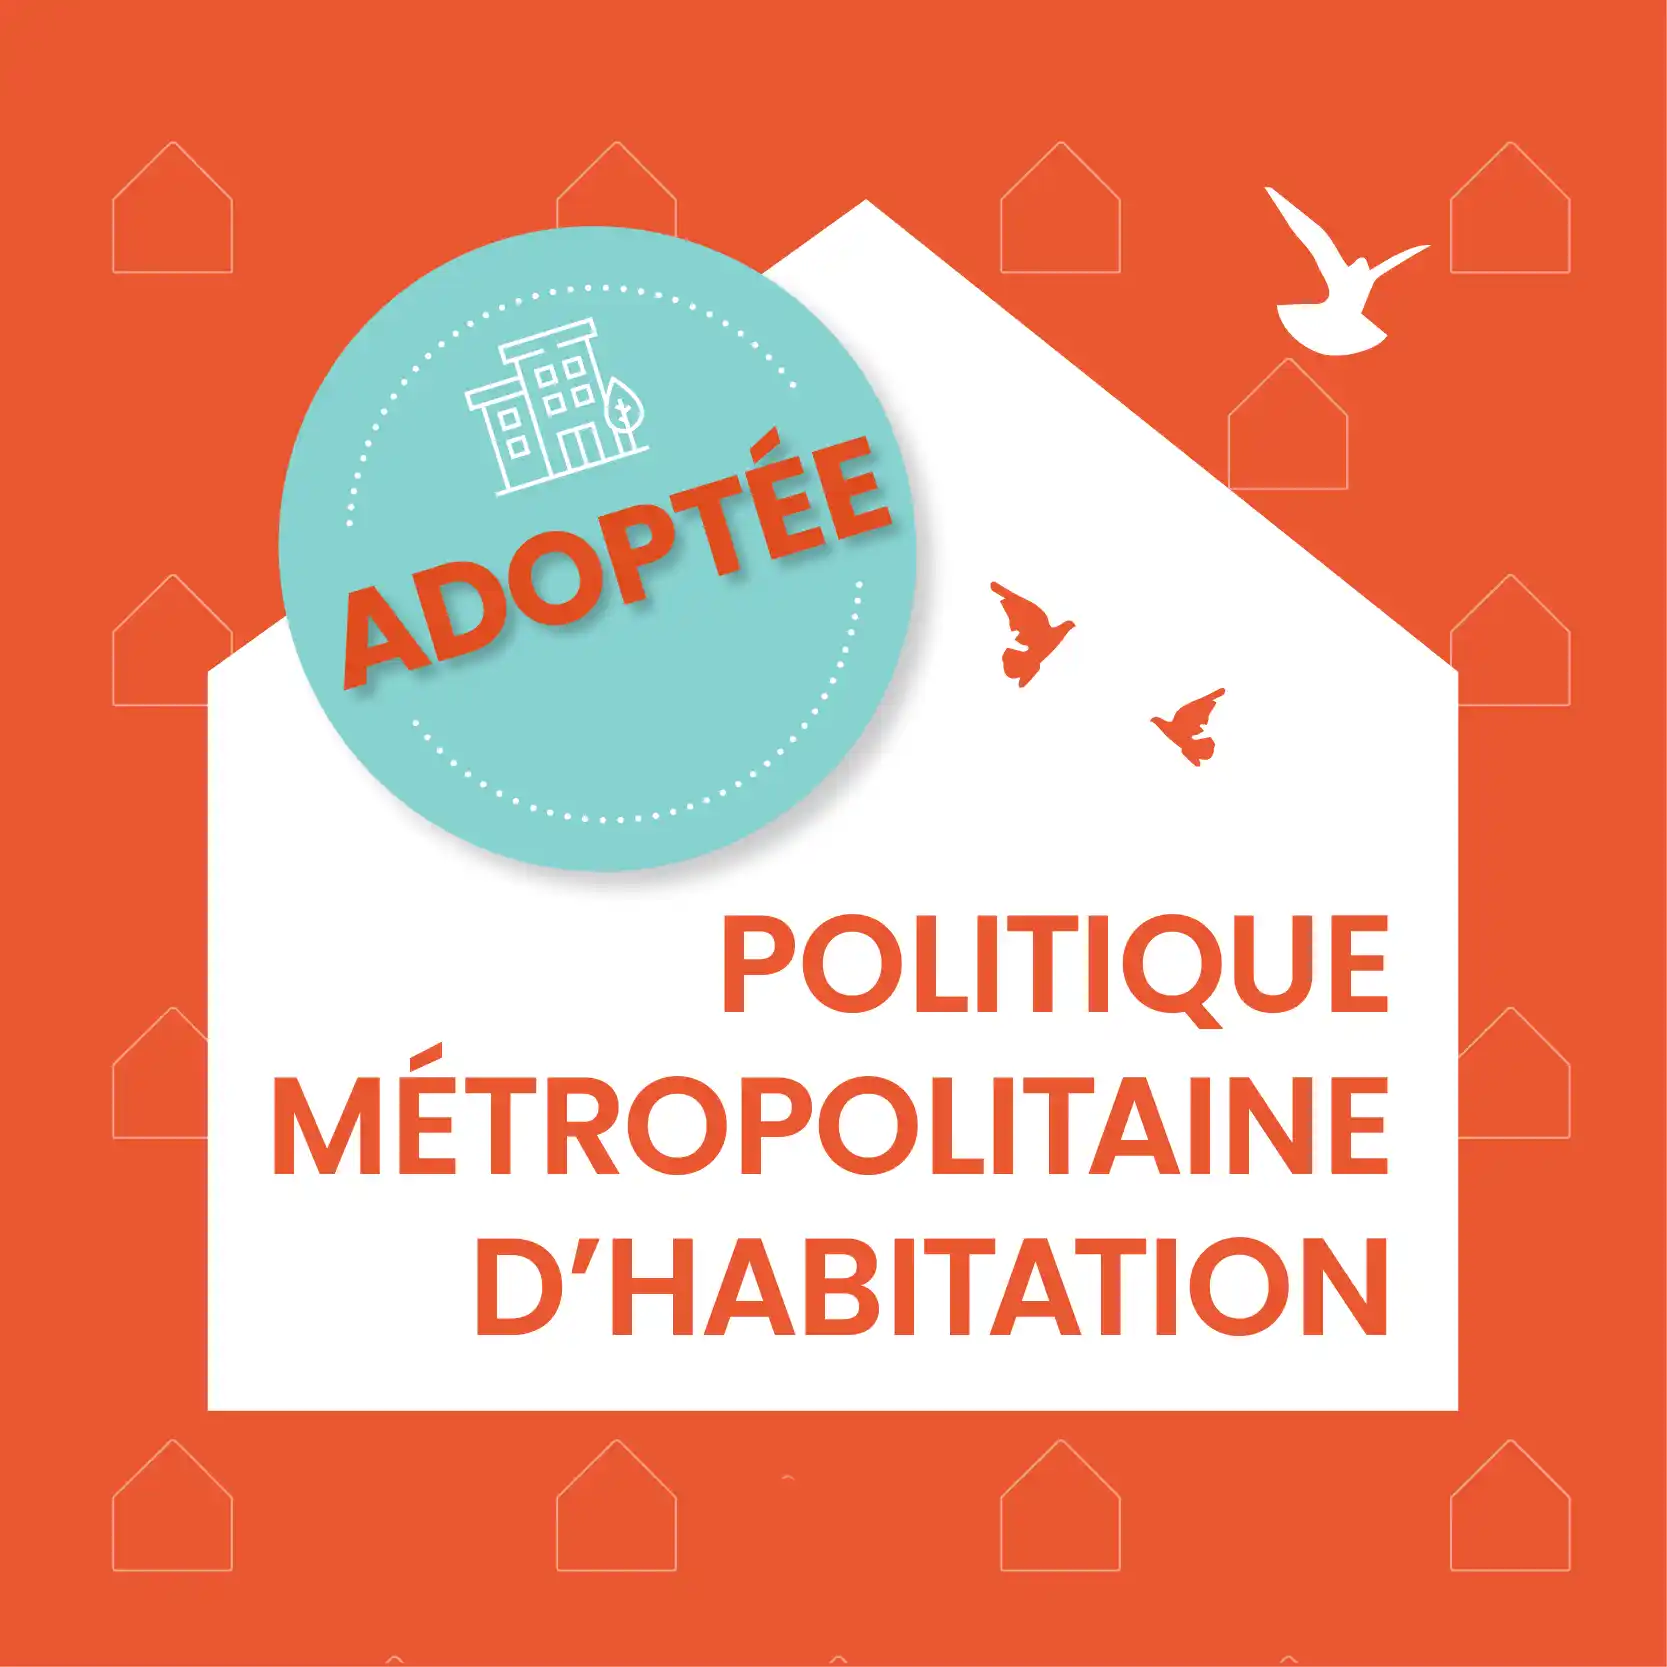 Politique métropolitaine d'habitation - Adoptée